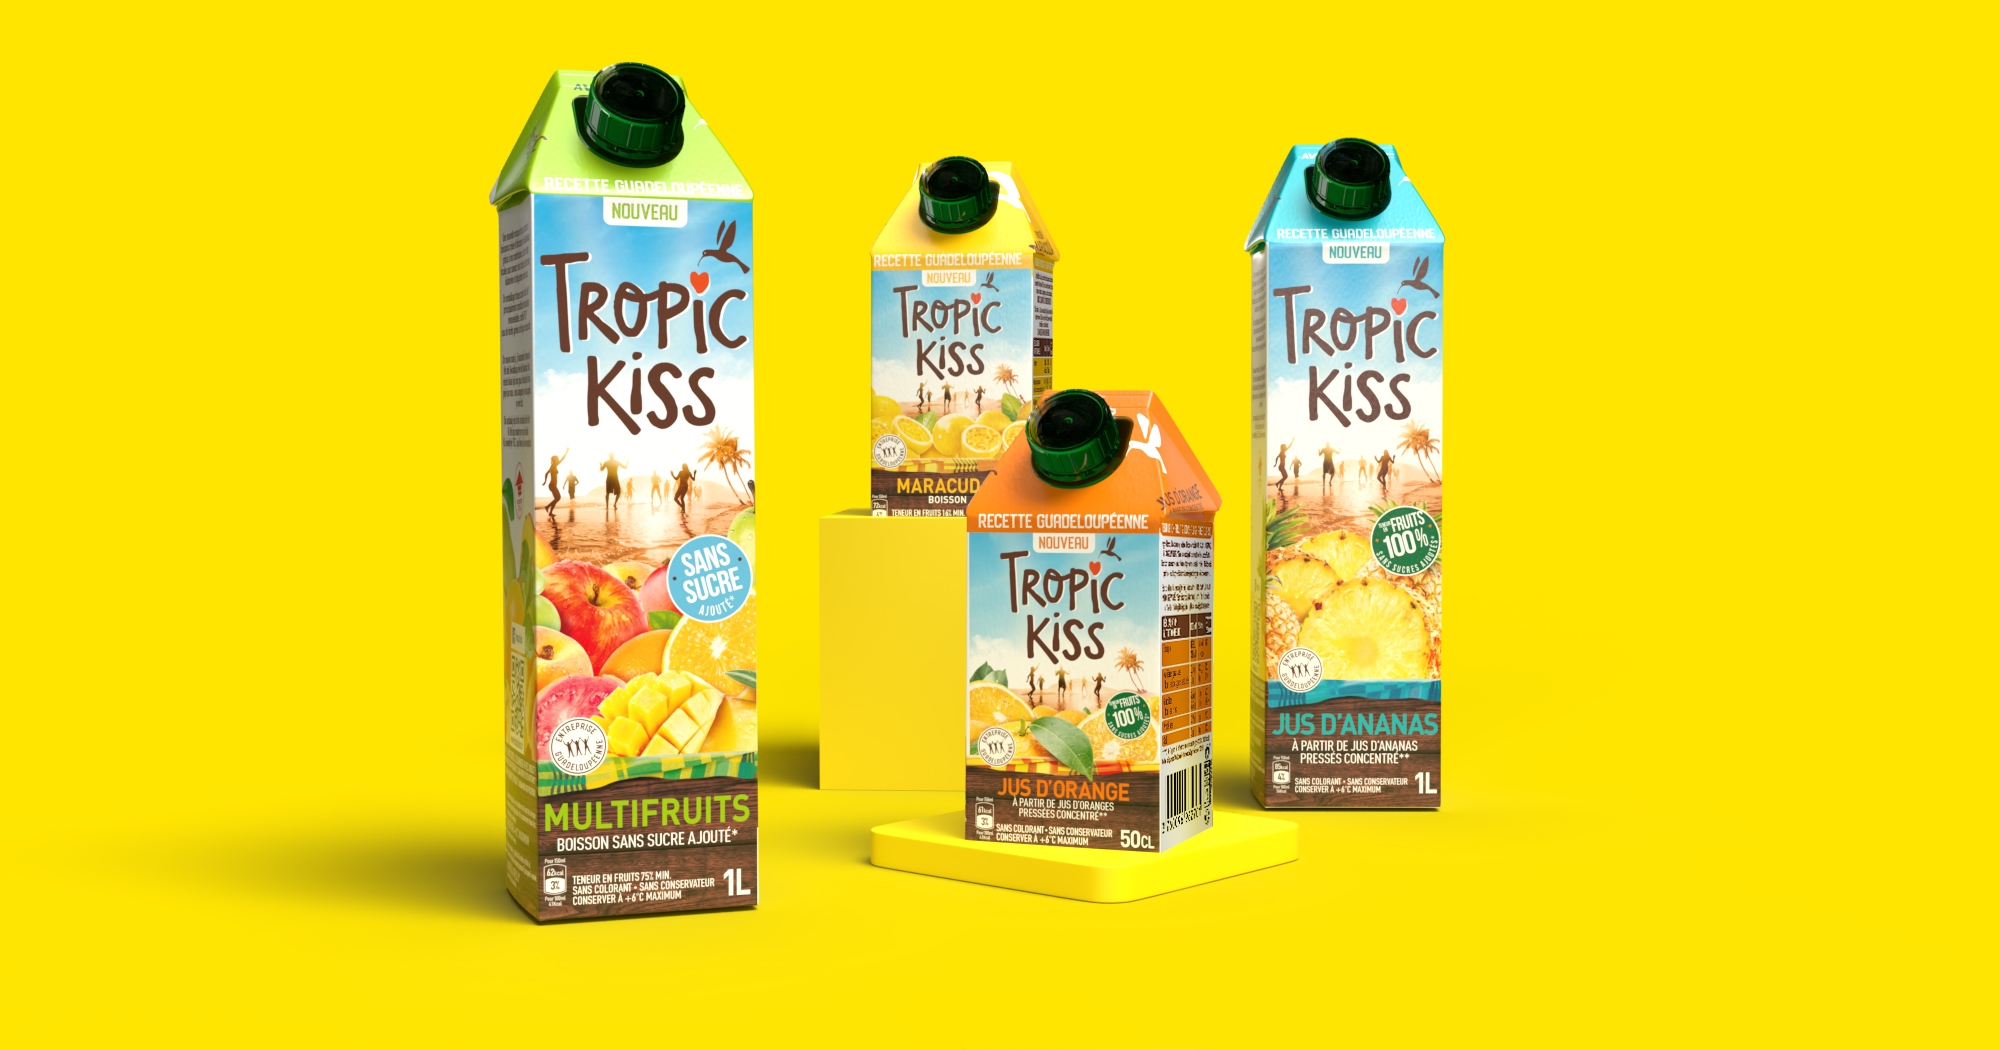 Gamme de packaging Tropick Kiss, vue de face, fond jaune, petites et grandes briques de jus de fruits